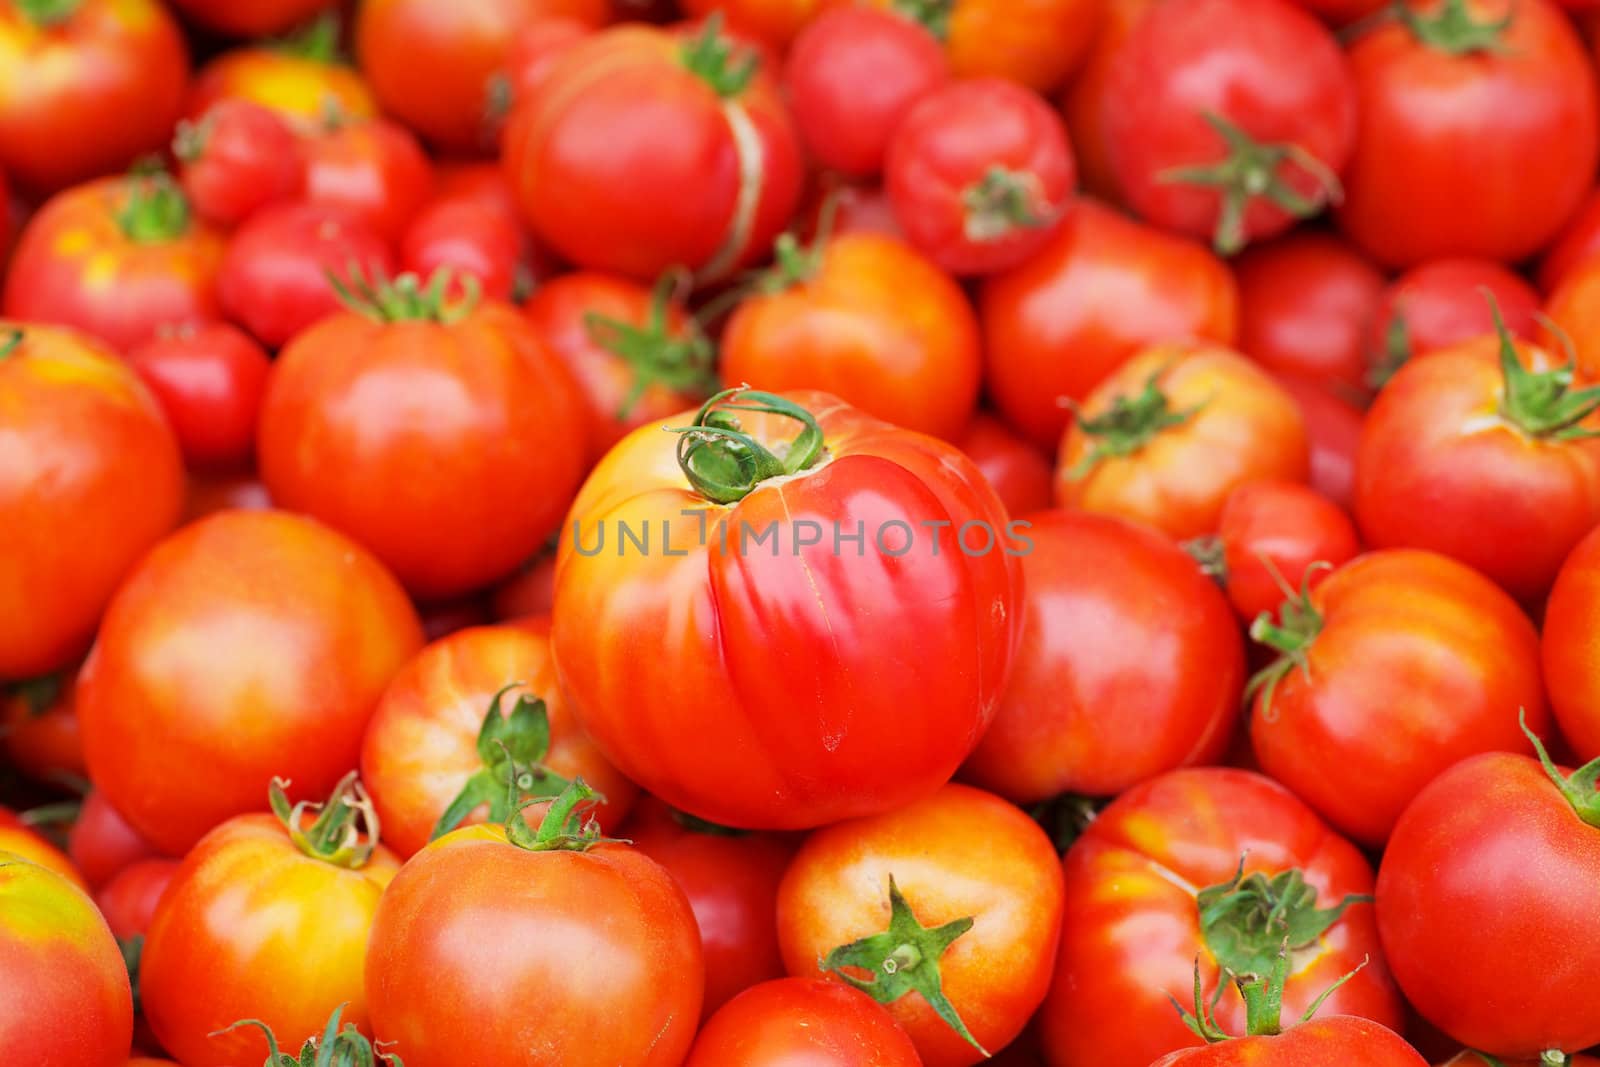 Red Juicy Tomatoes Single focus by bobkeenan